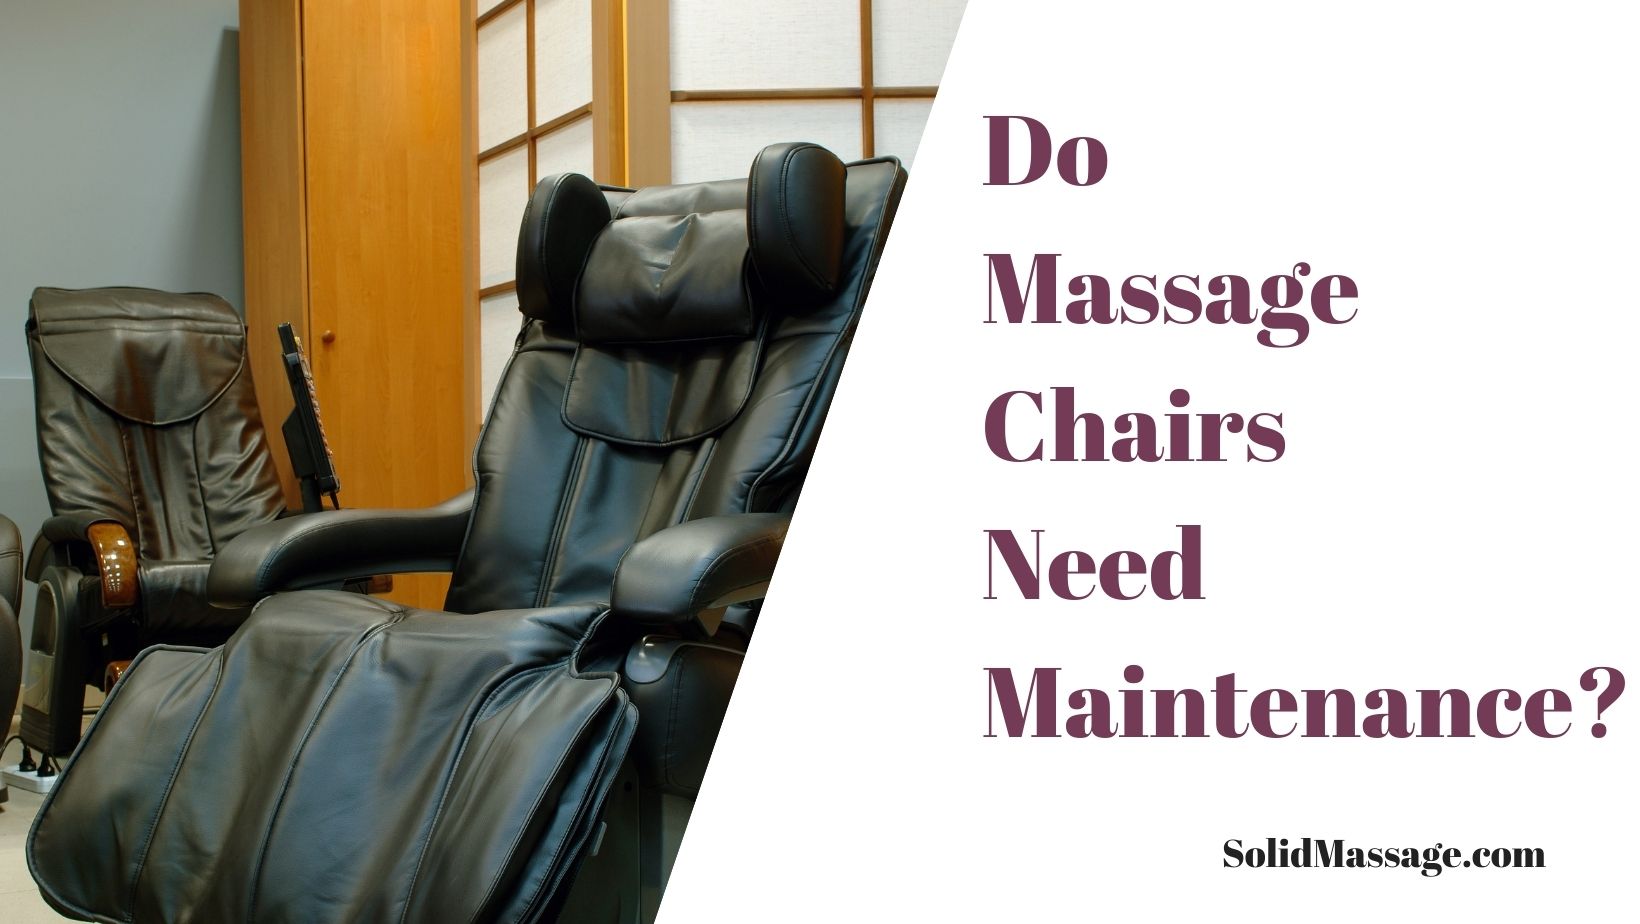 Do Massage Chairs Need Maintenance